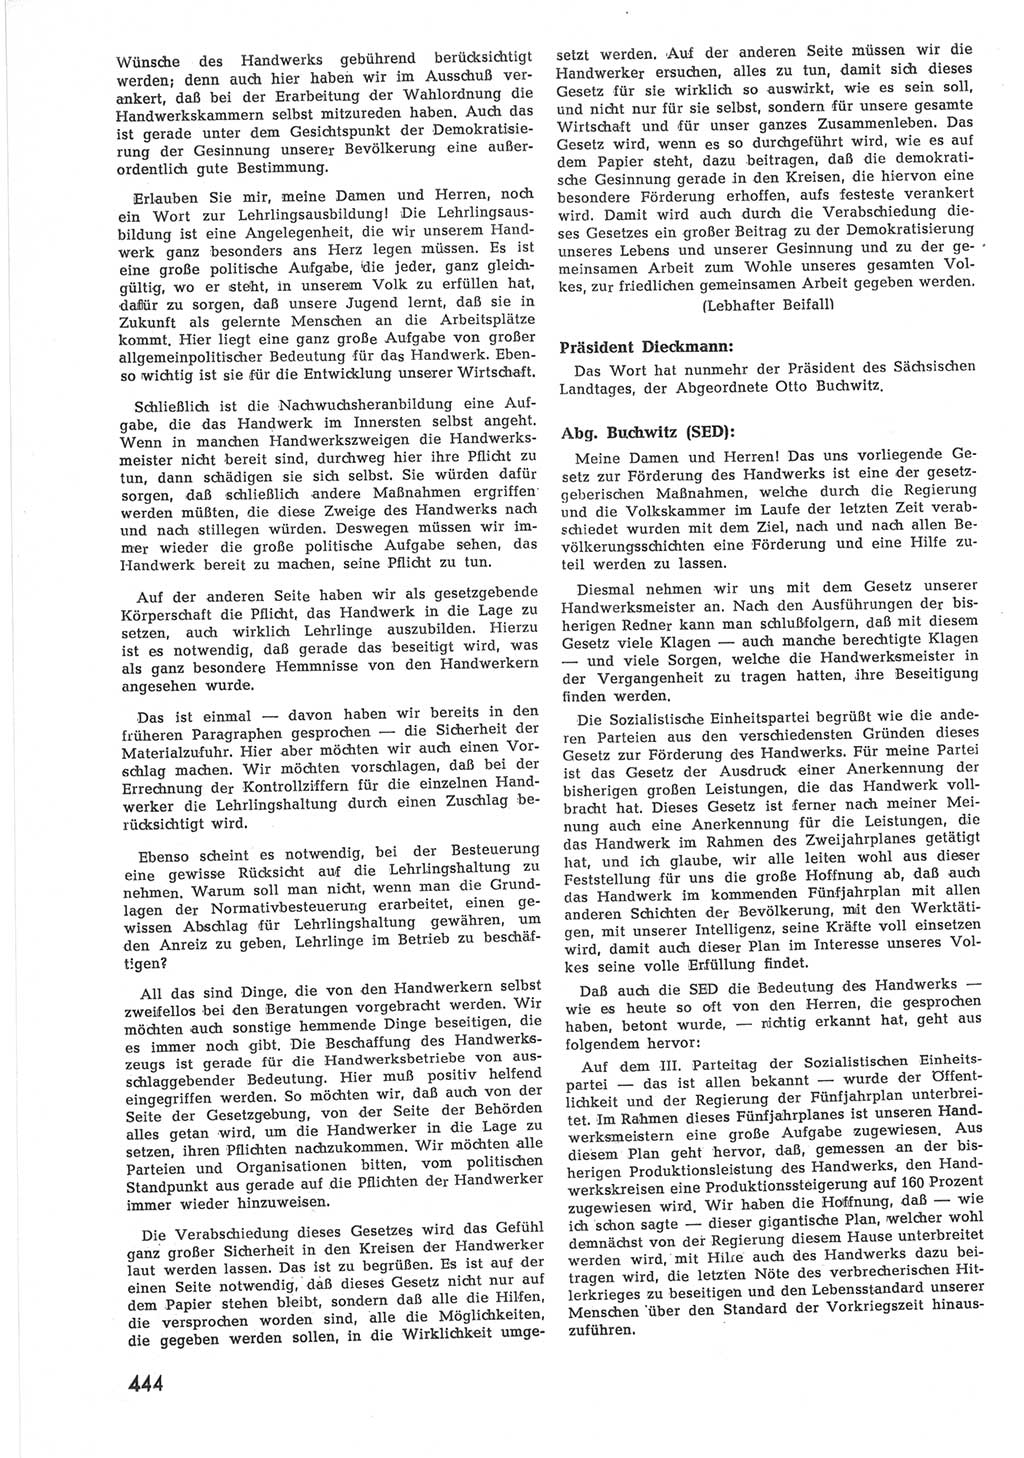 Provisorische Volkskammer (VK) der Deutschen Demokratischen Republik (DDR) 1949-1950, Dokument 462 (Prov. VK DDR 1949-1950, Dok. 462)